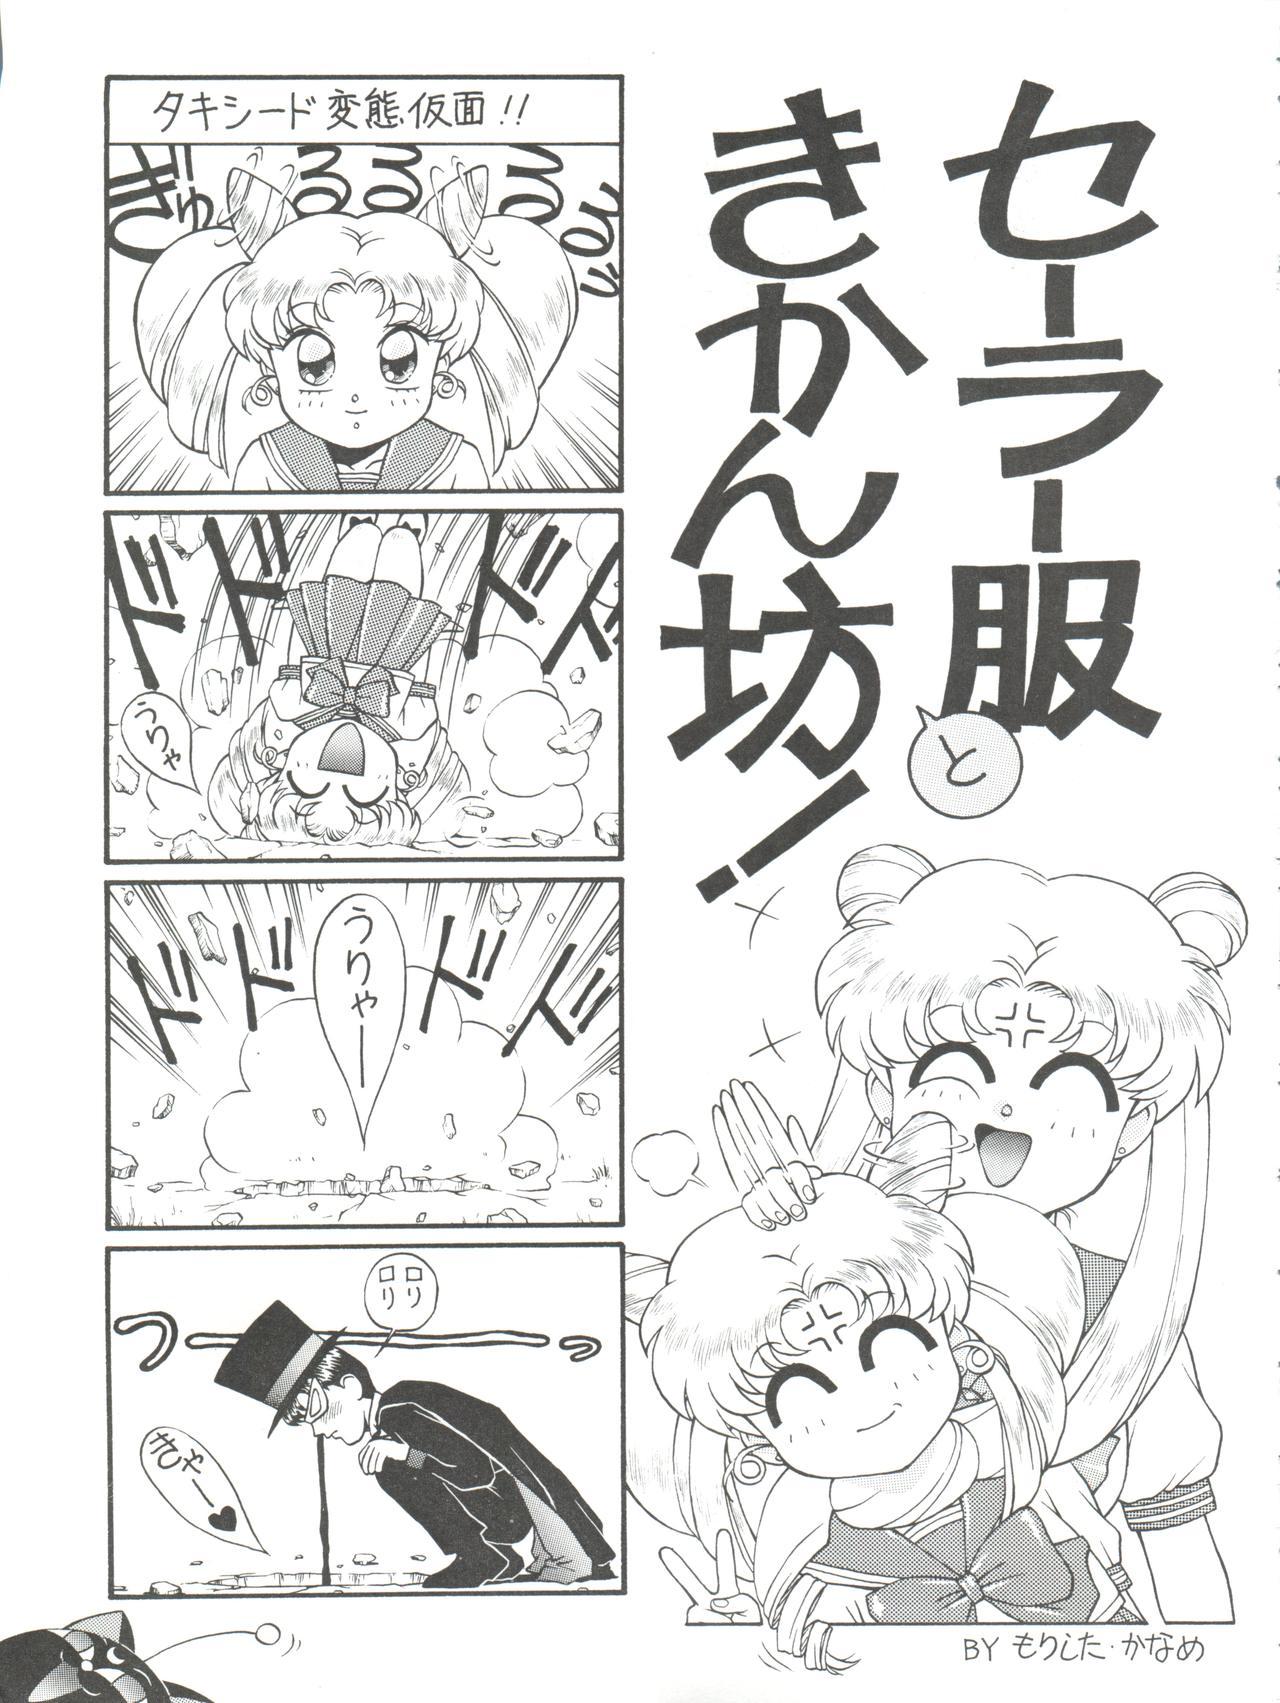 Sislovesme NANIWA-YA FINAL DRESS UP! - Sailor moon Slayers Hime-chans ribbon Ng knight lamune and 40 Brave express might gaine Gay Bus - Page 11